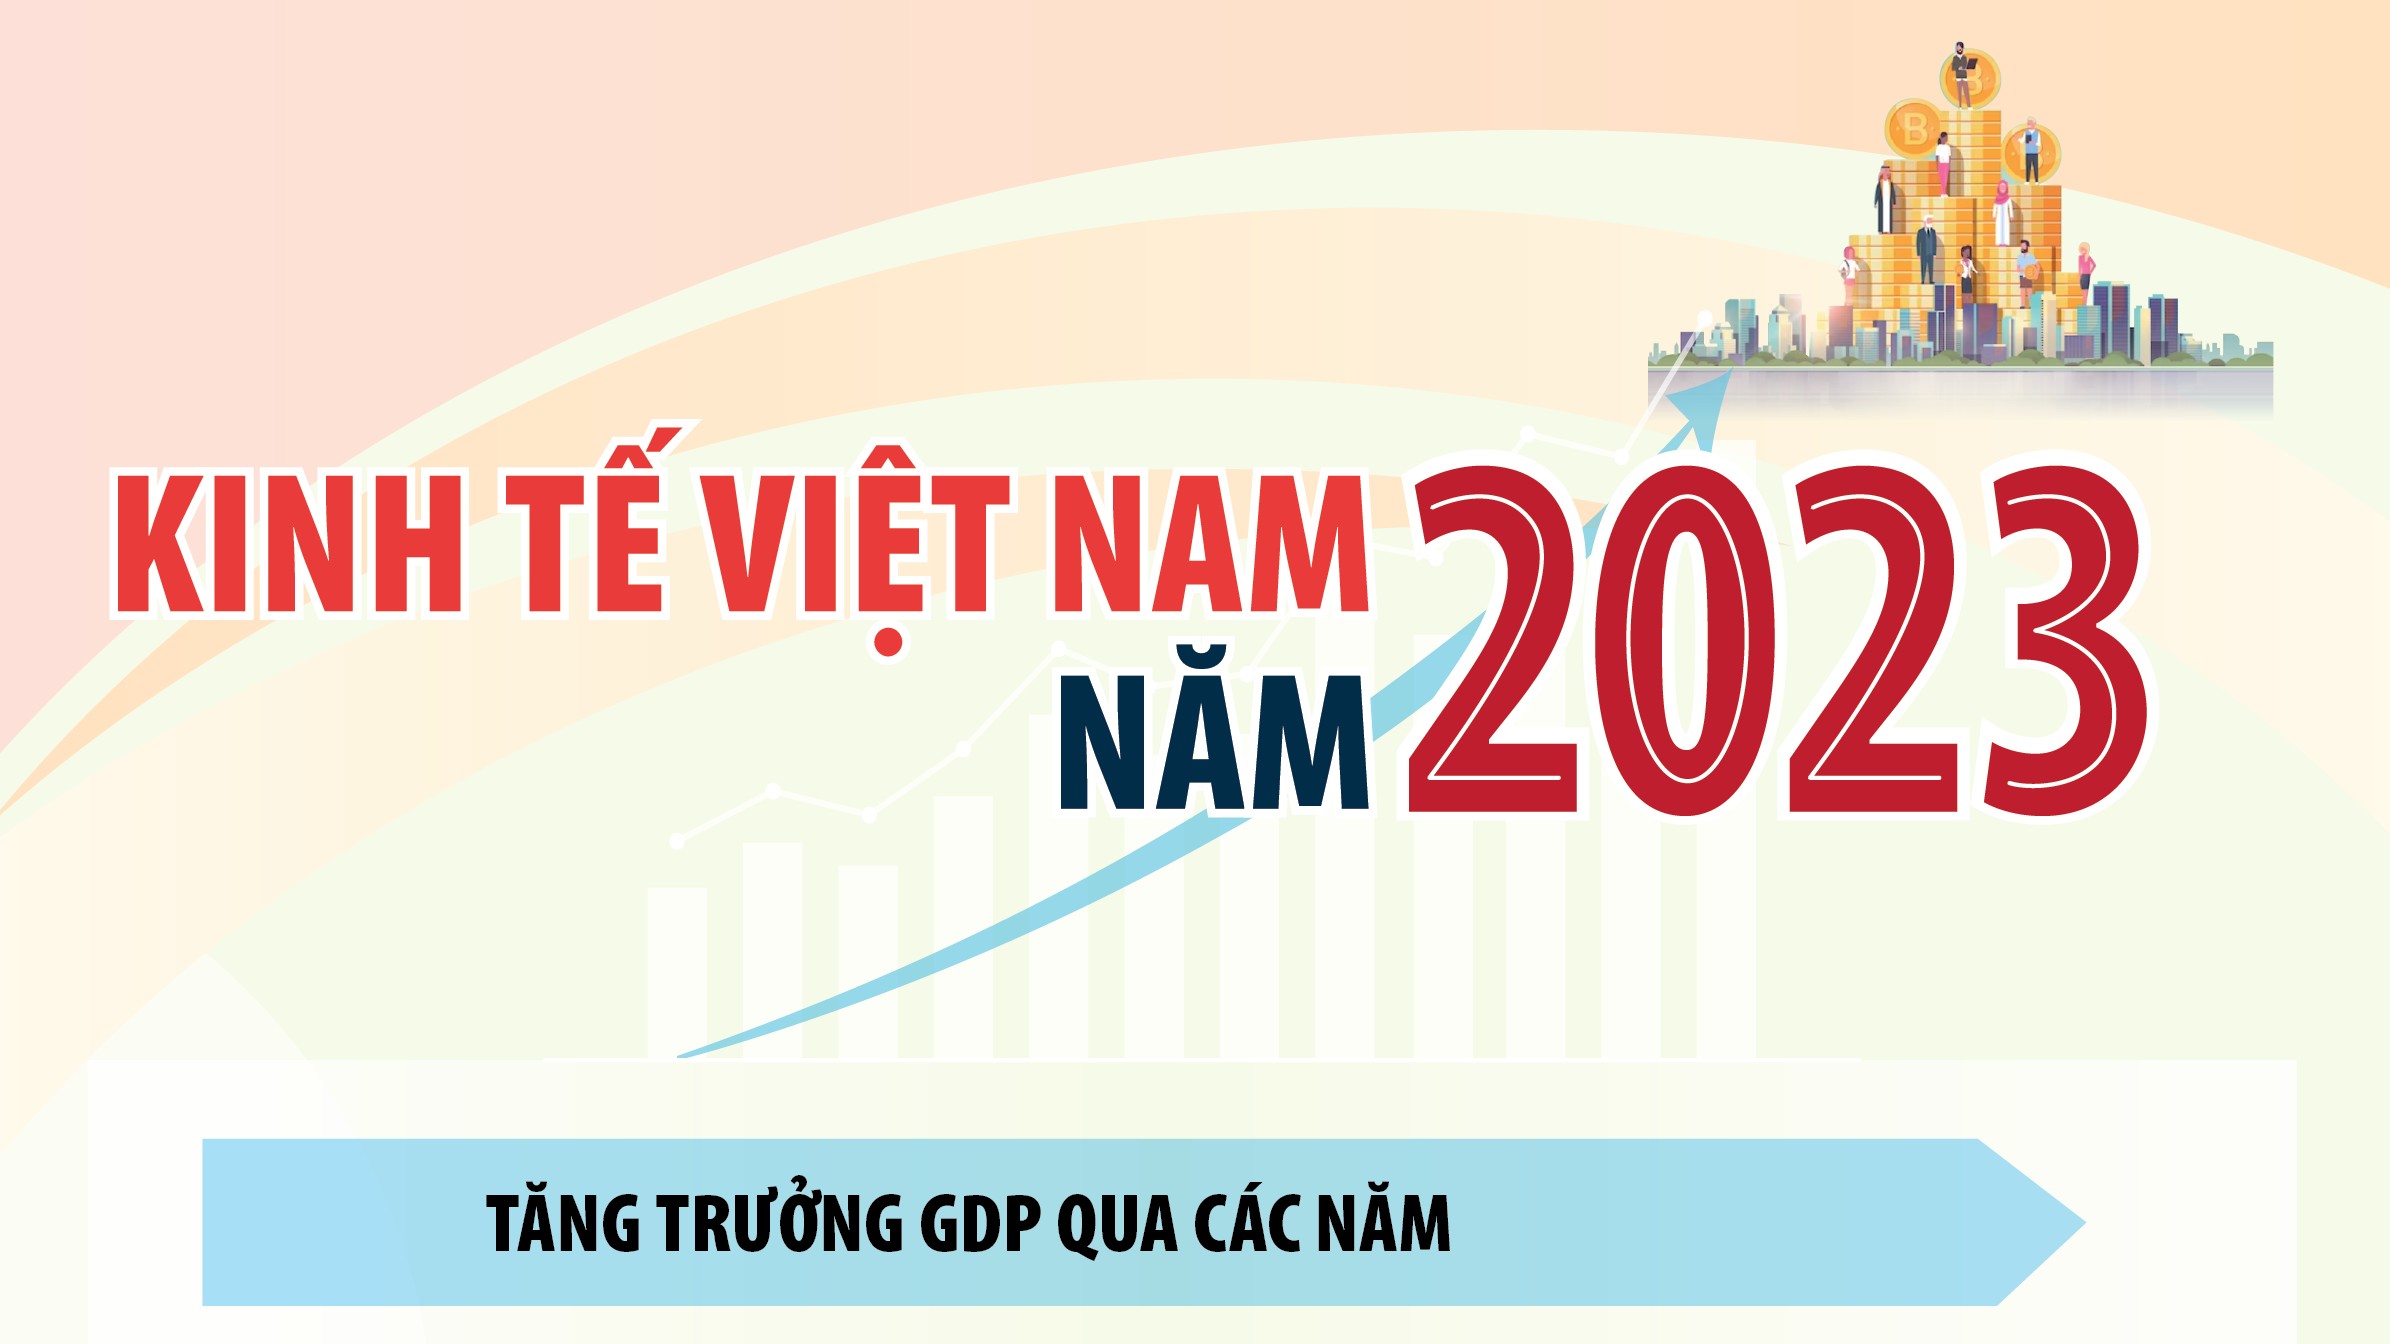 Inforgraphics: Kinh tế Việt Nam năm 2023 qua các con số